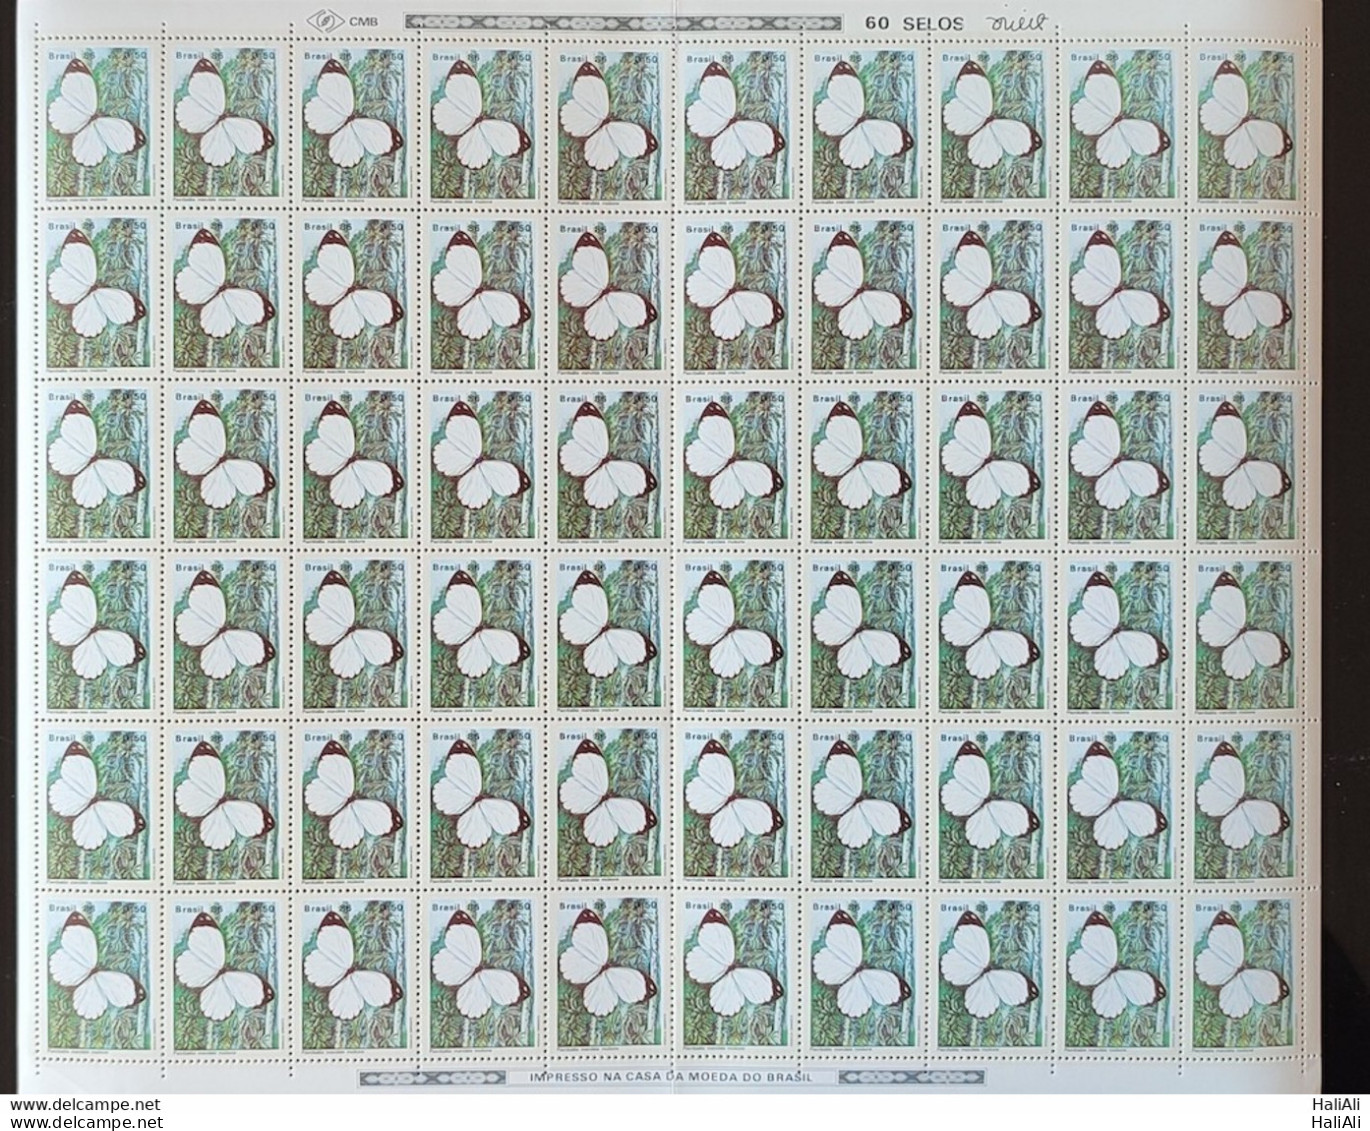 C 1513 Brazil Stamp Butterfly Insects 1986 Sheet.jpg - Ongebruikt